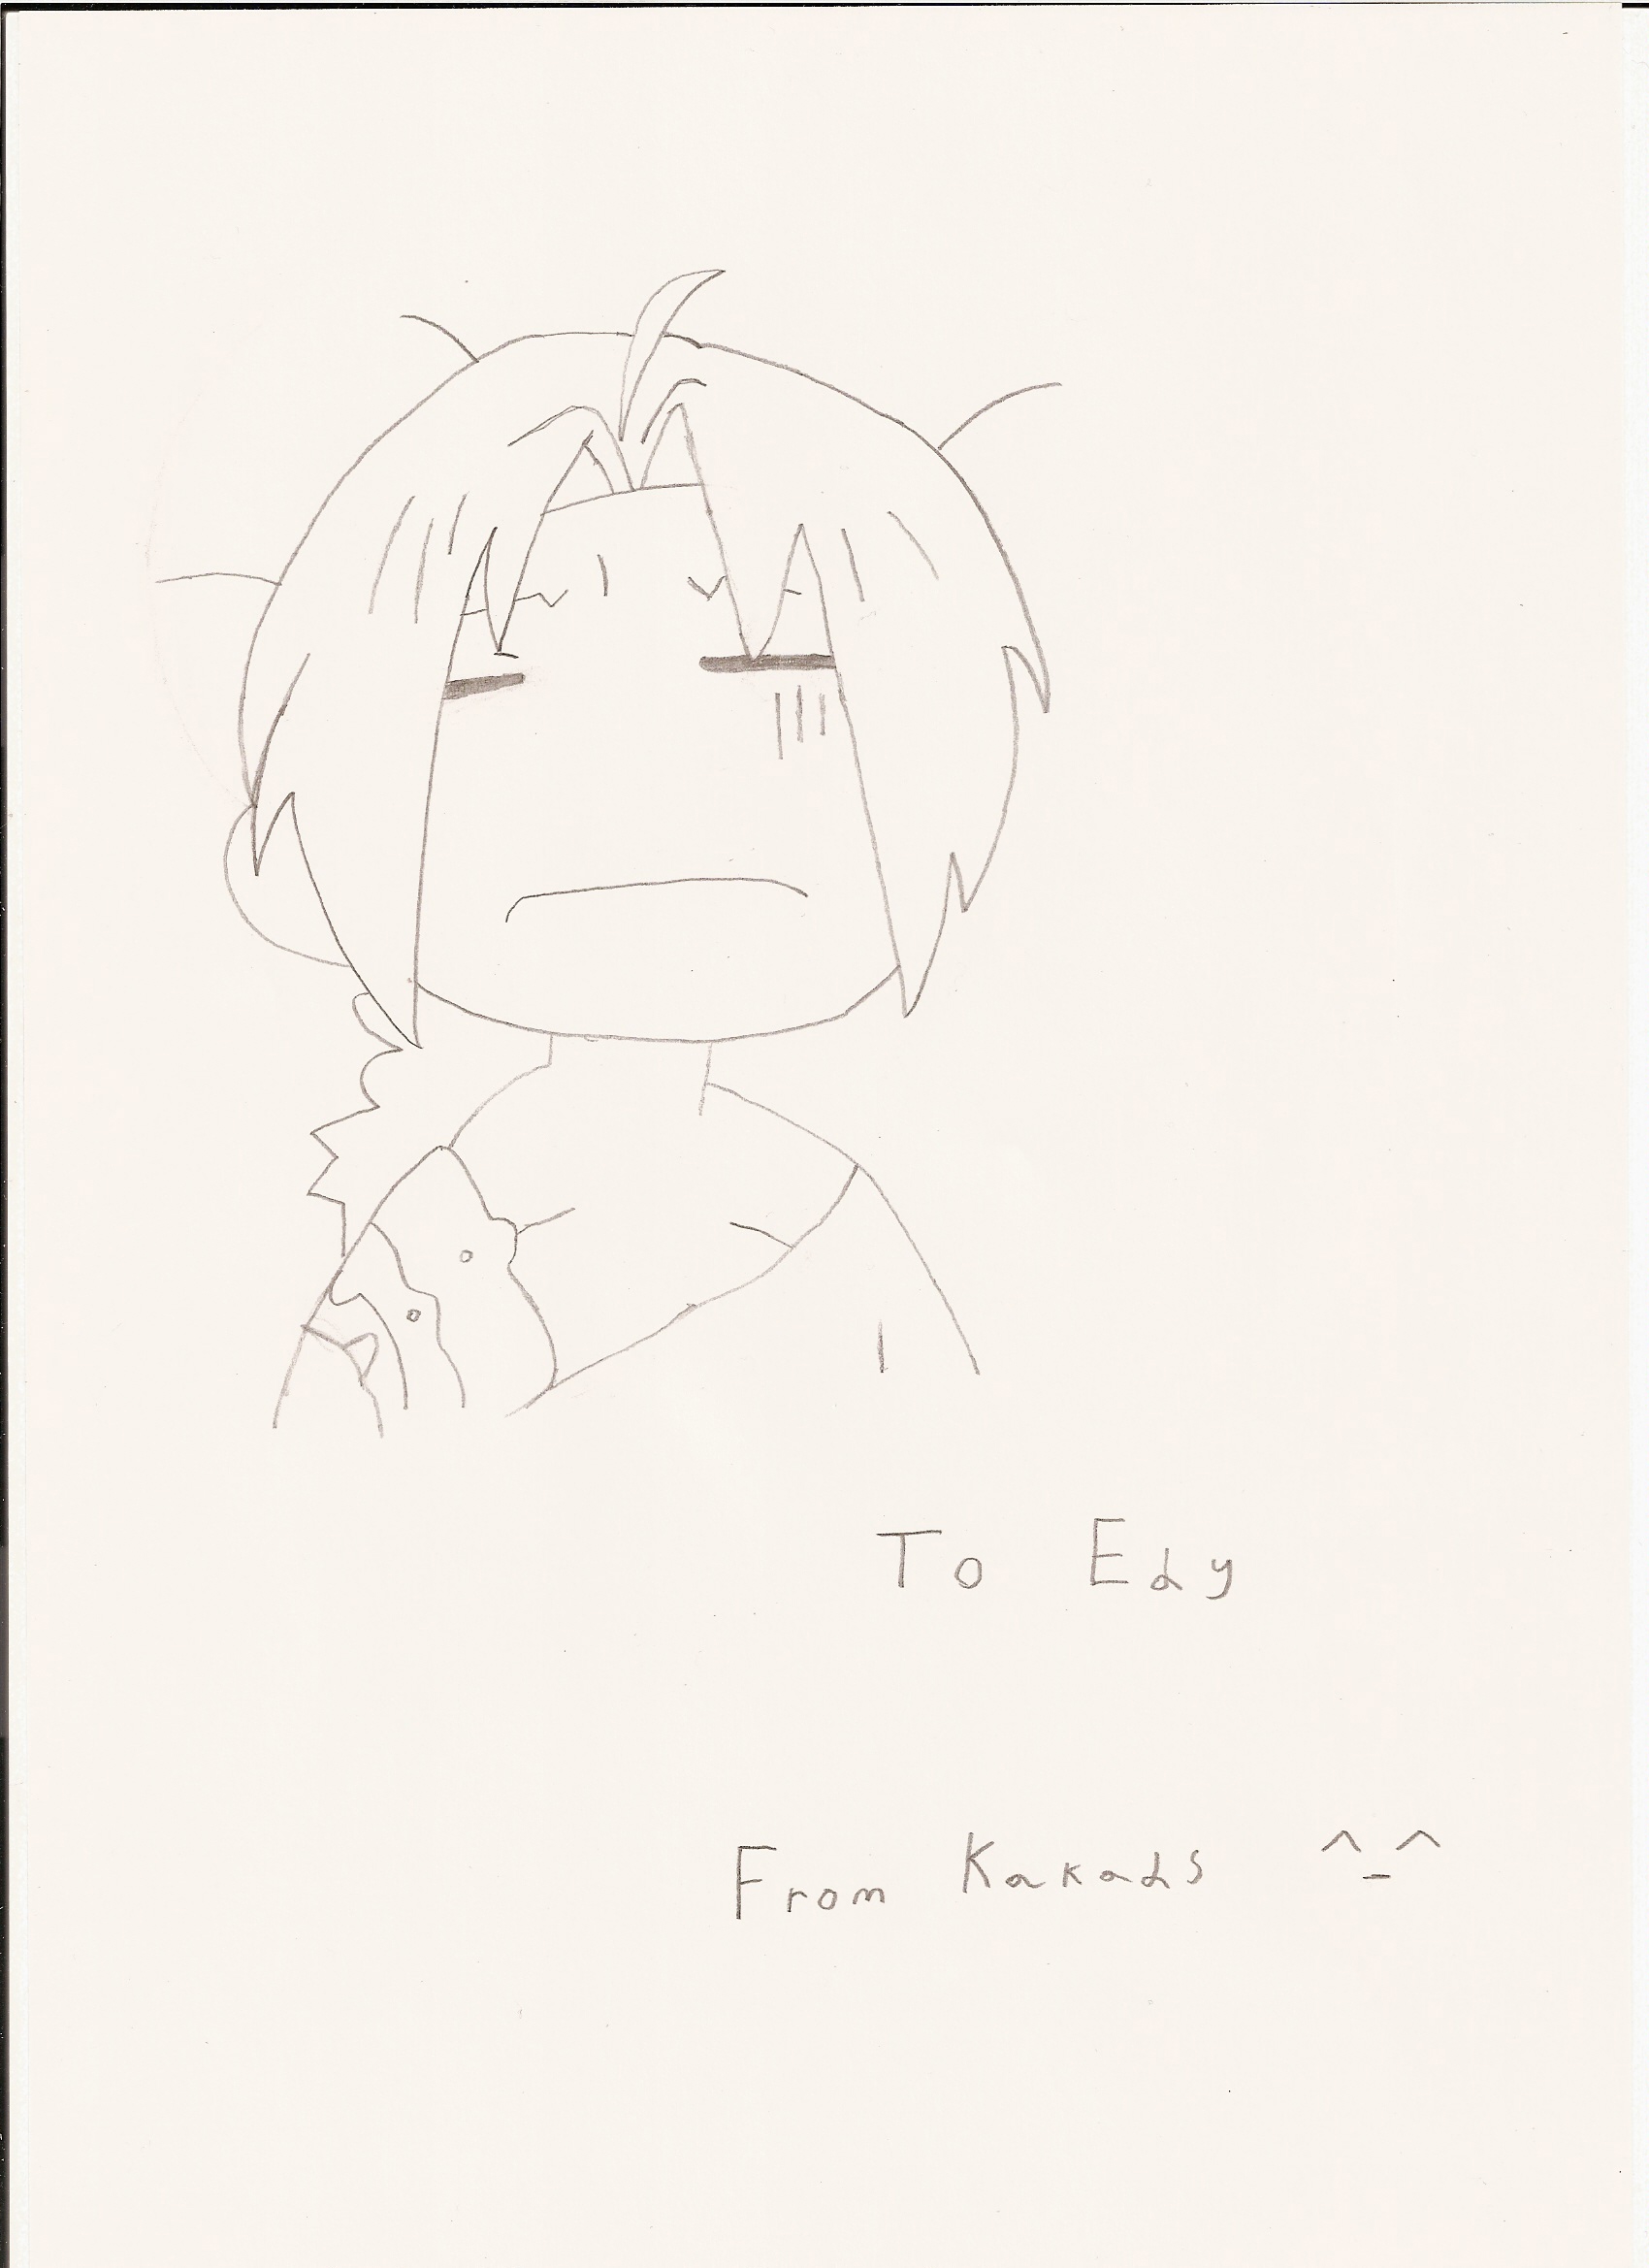 Edward Elric by Kakads